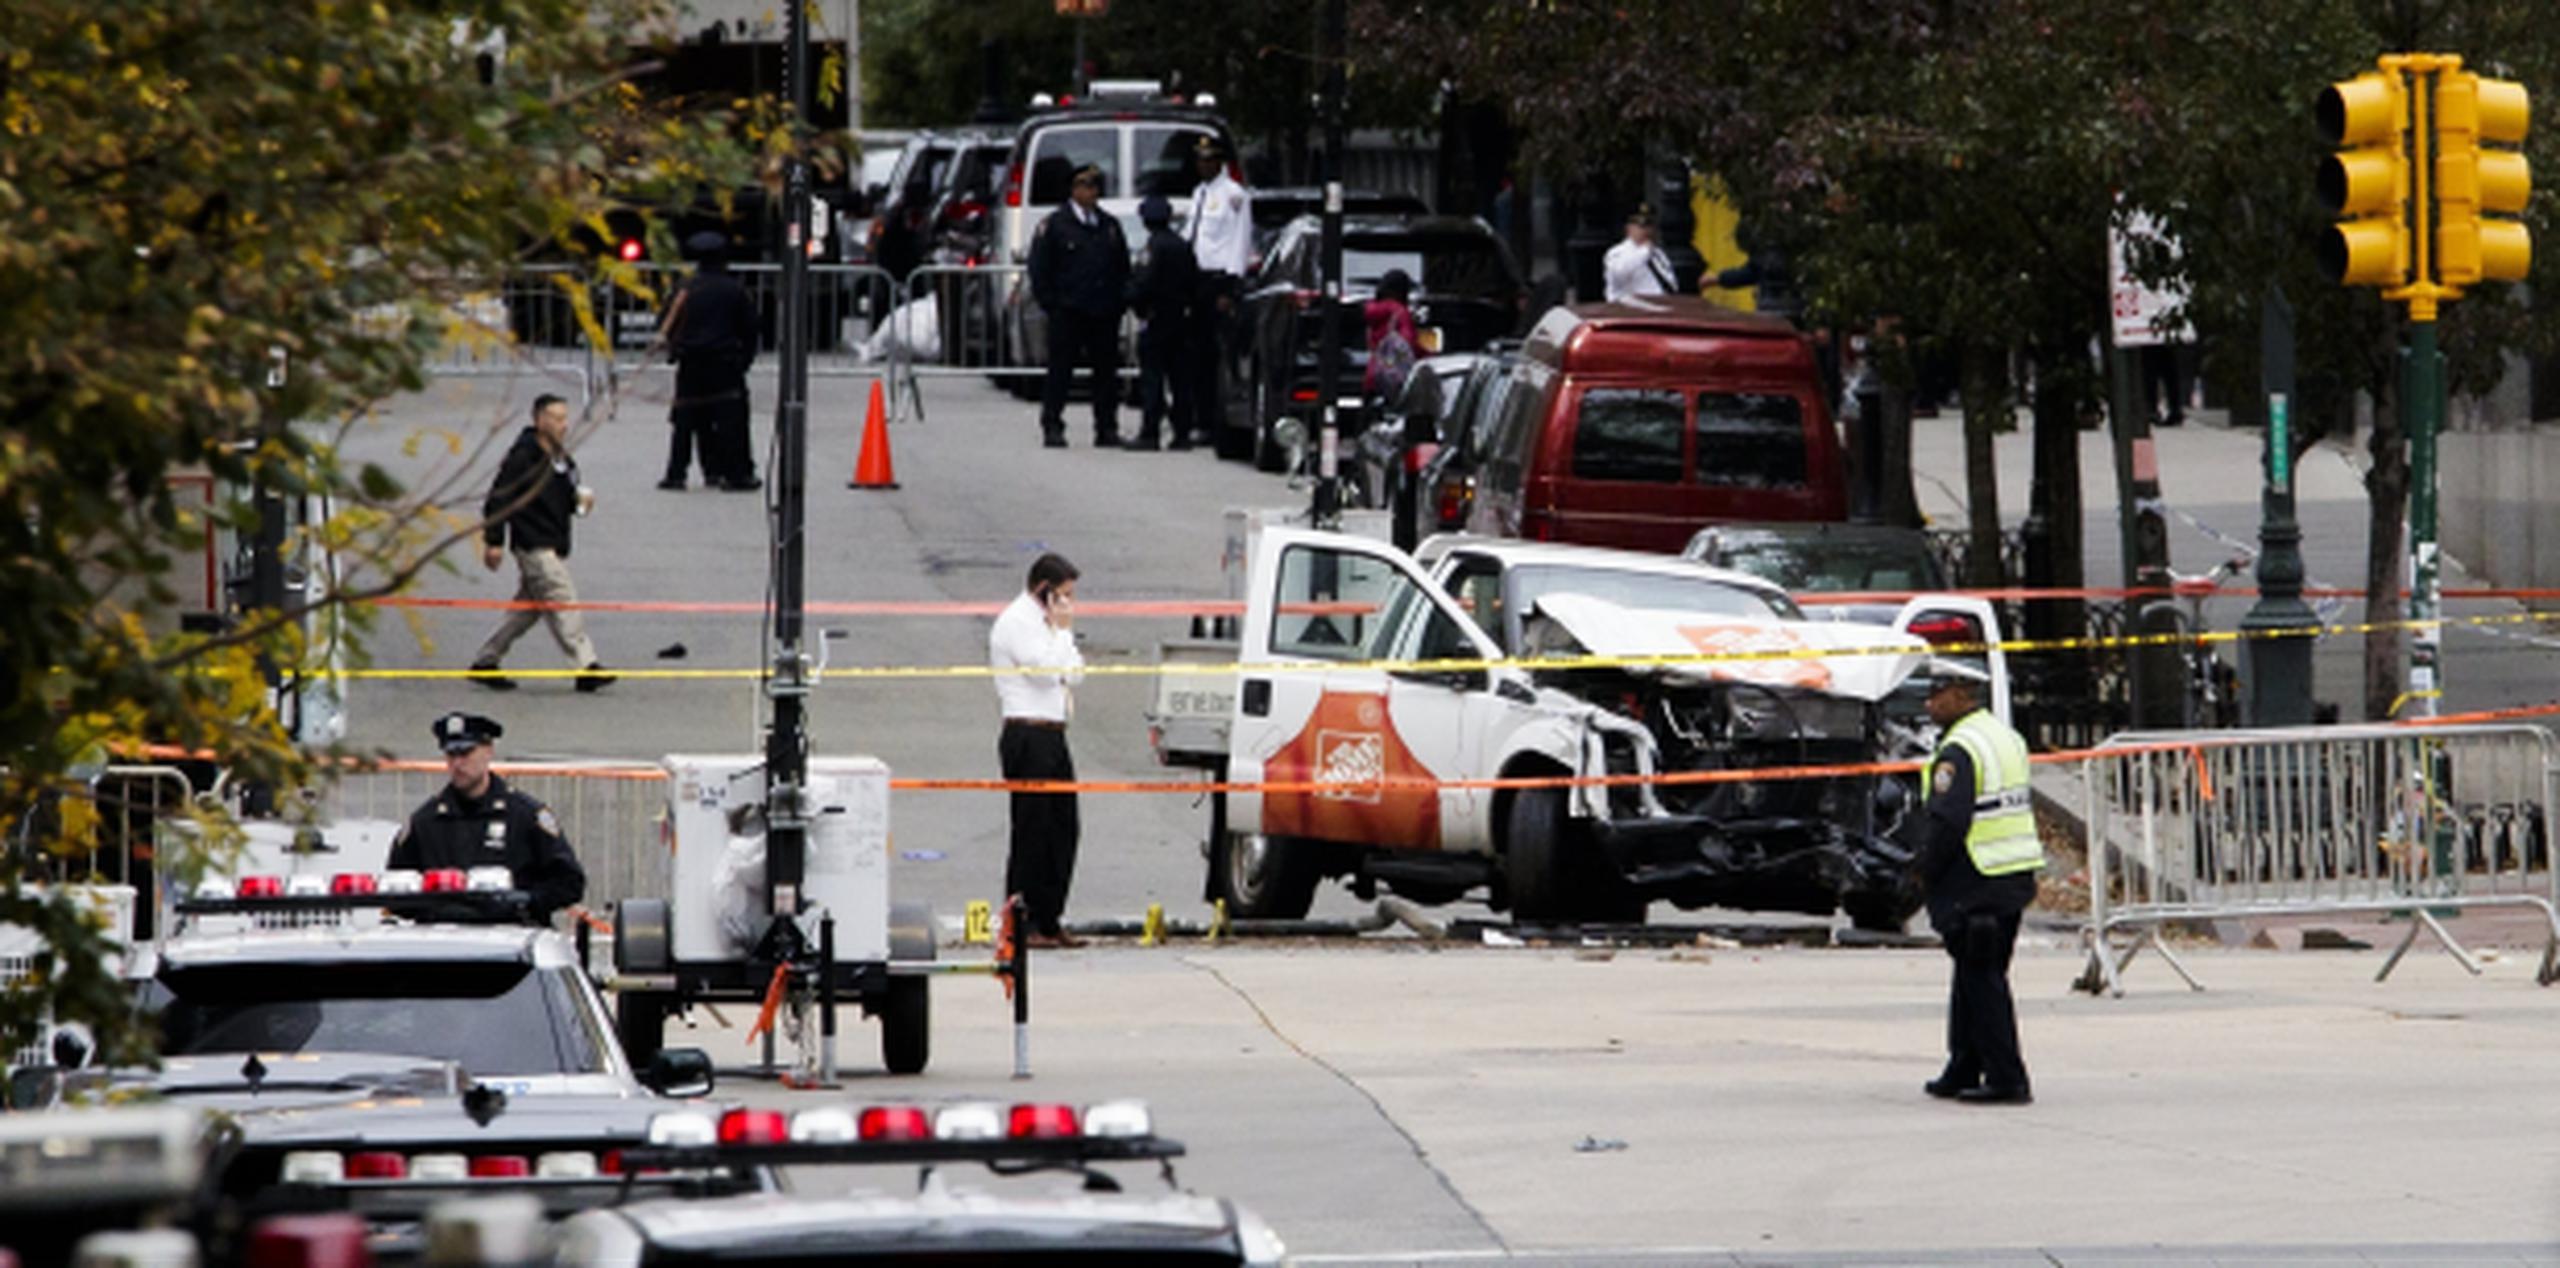 Policía criminal revisando el vehículo que atropelló y mató a ocho personas e hirió a 11 en Nueva York. (EFE / Justin Lane)